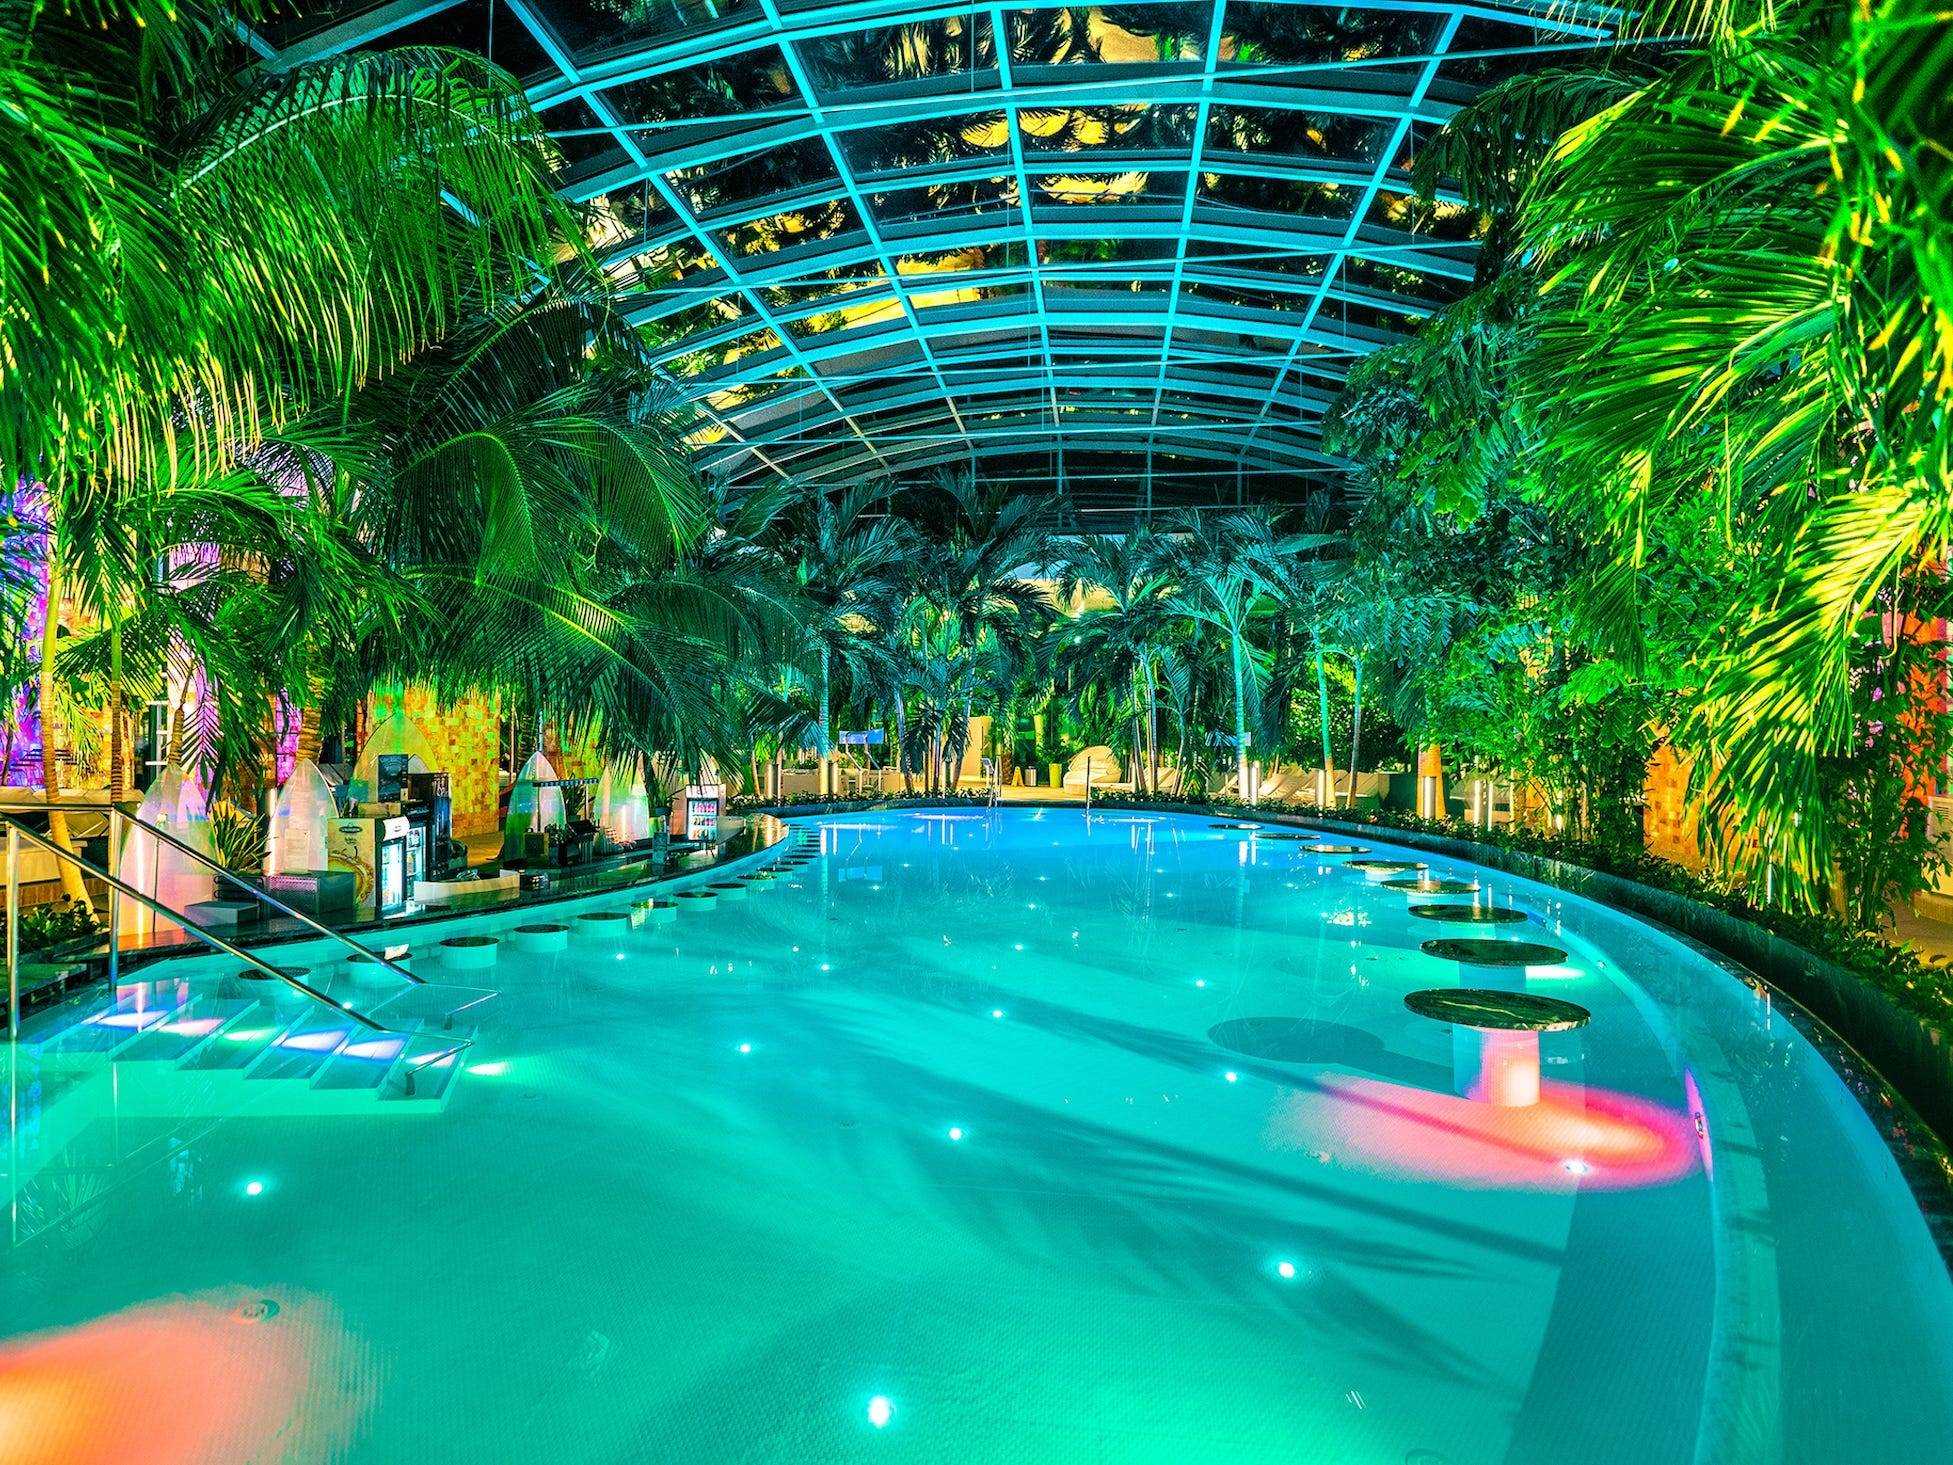 ein Pool von Pflanzen mit Lichtern beleuchtet